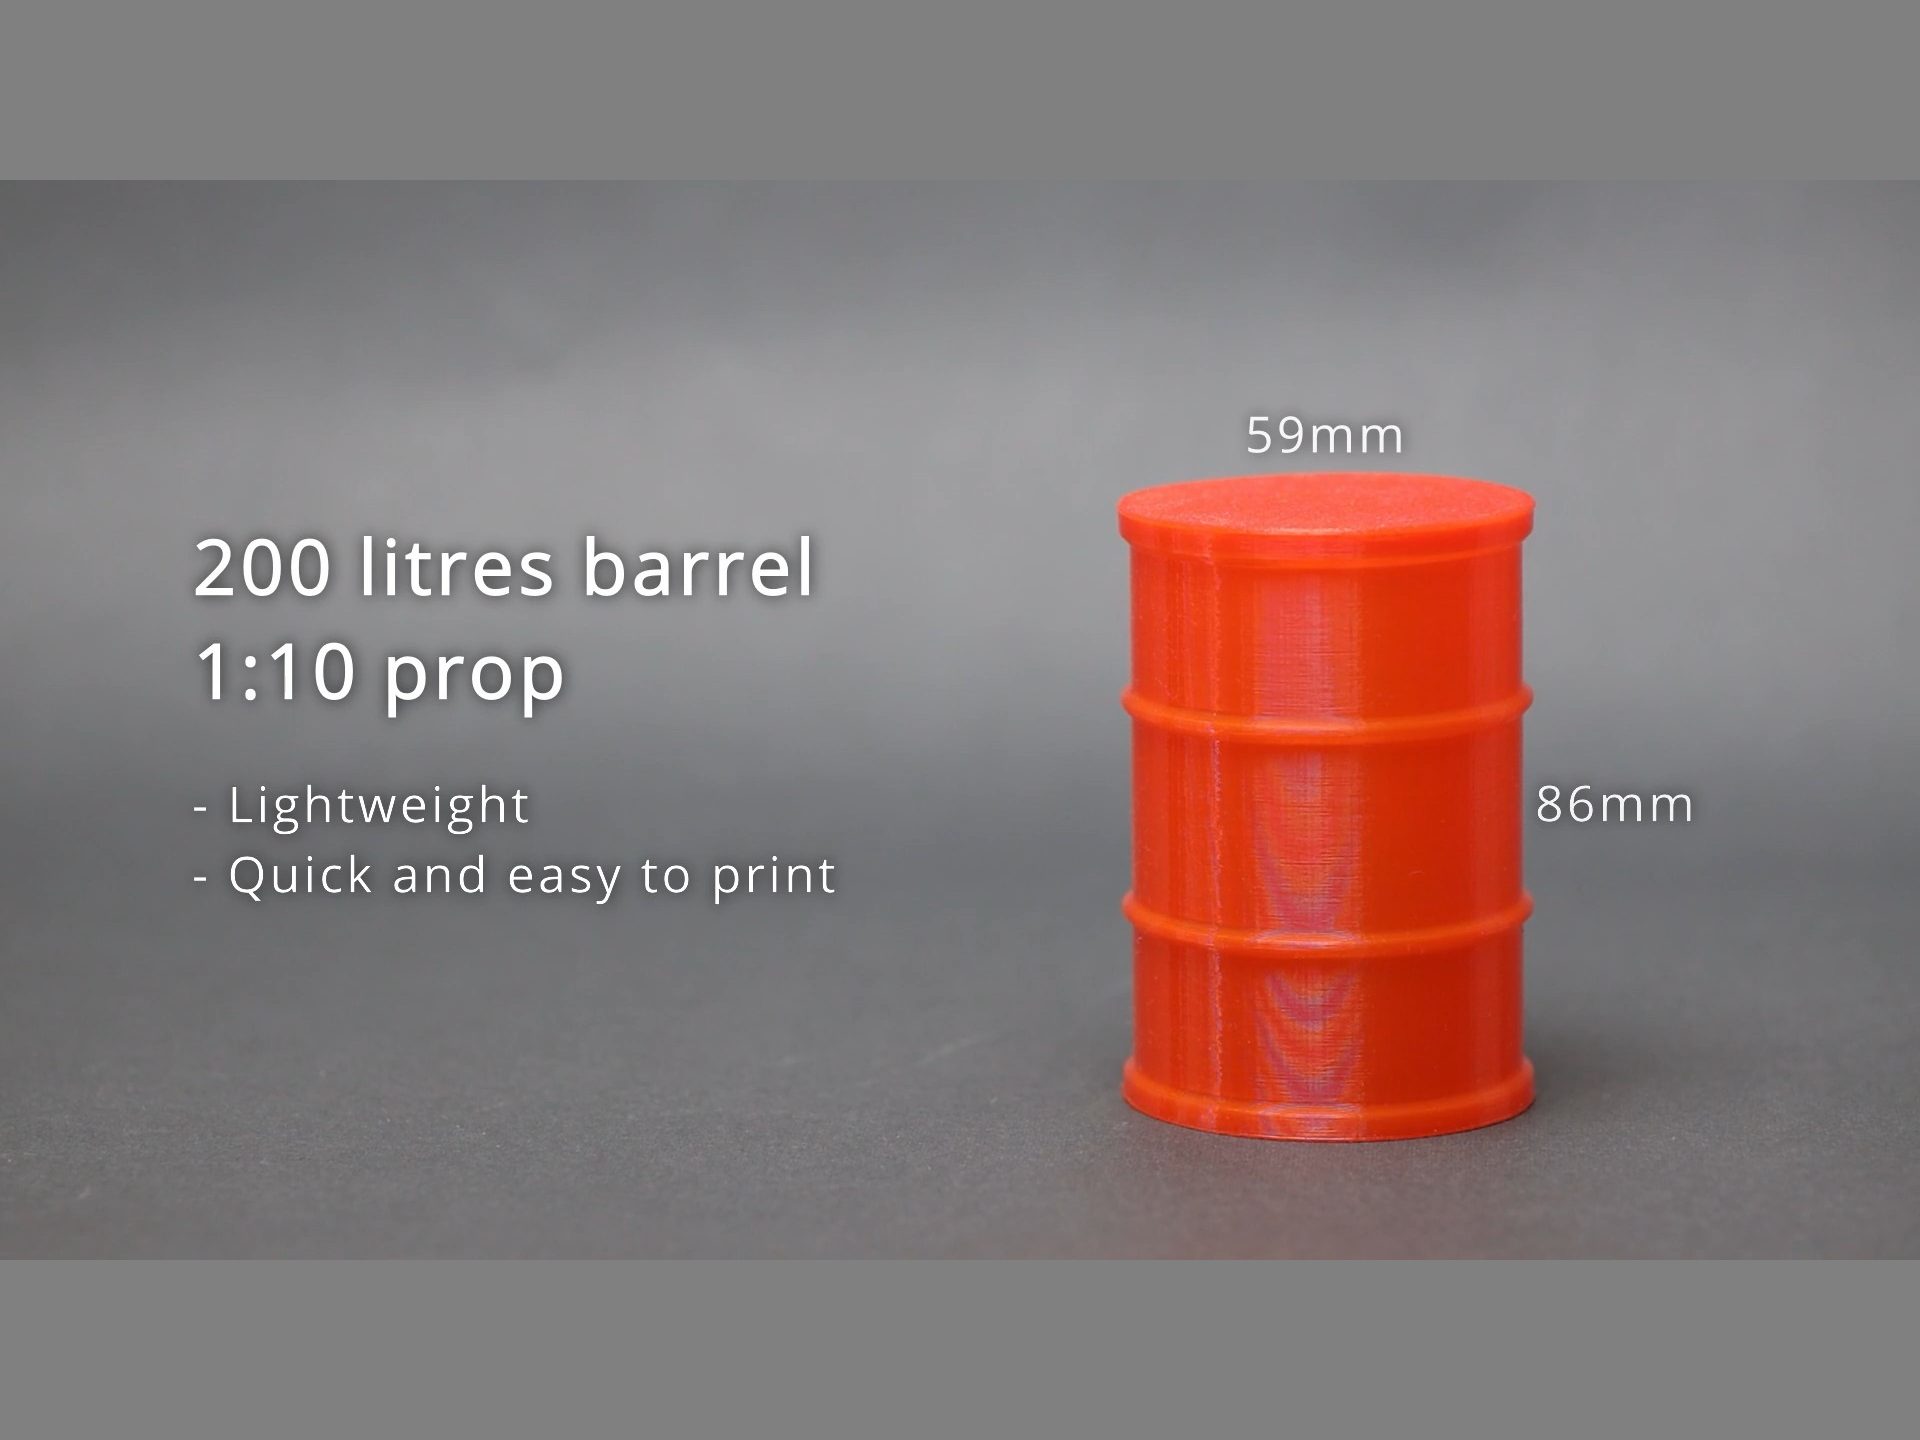 200 liters barrel 1:10 prop - 3D printing a blow mold part POC